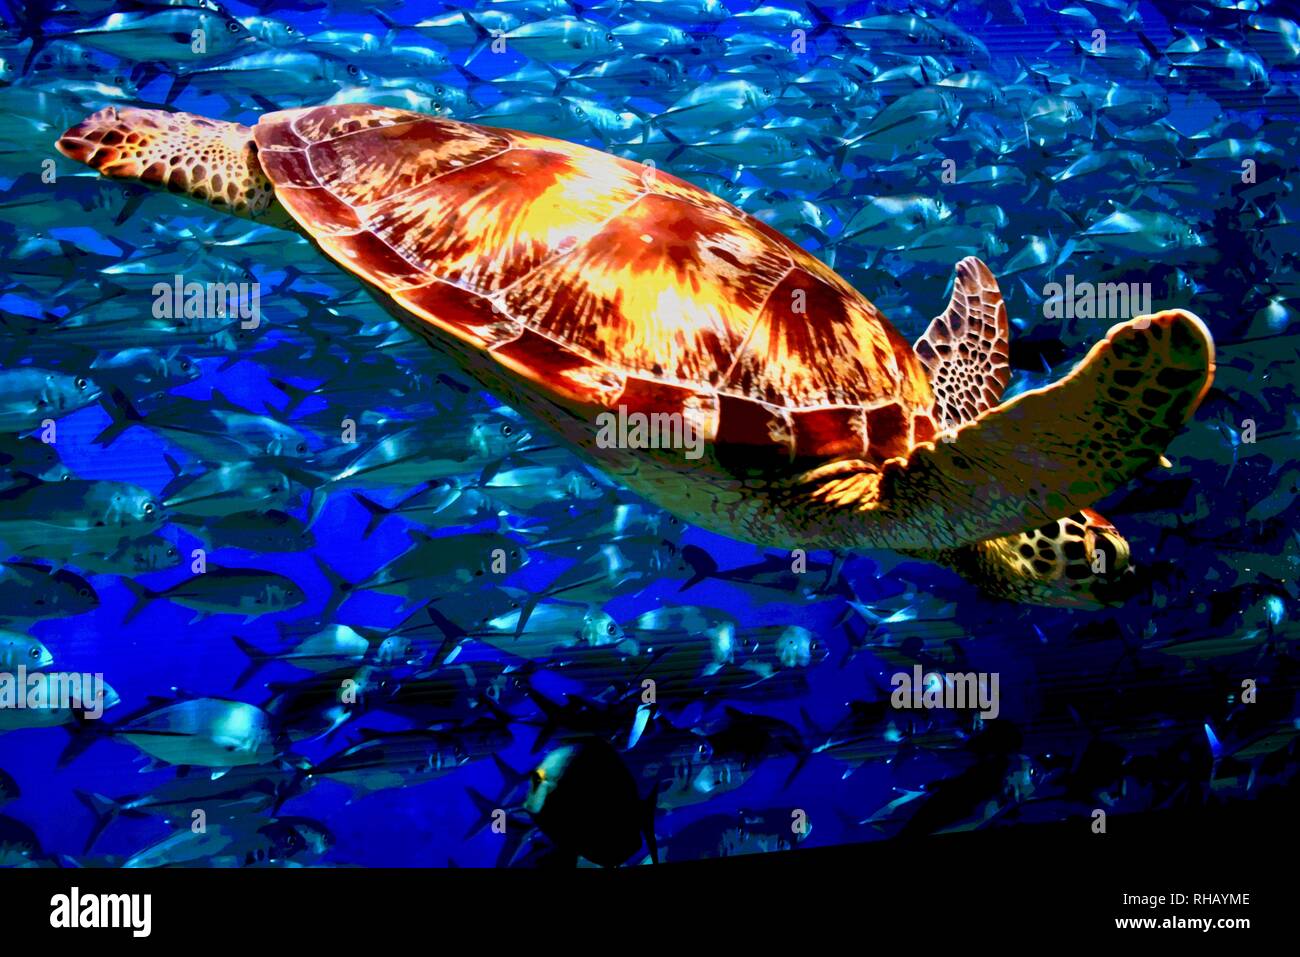 Vista cercana de tortugas en "El Muro" Samsung TV MicroLED, caseta en el CES, el más grande del mundo Consumer Electronic Show de Las Vegas, NV, EE.UU. Foto de stock